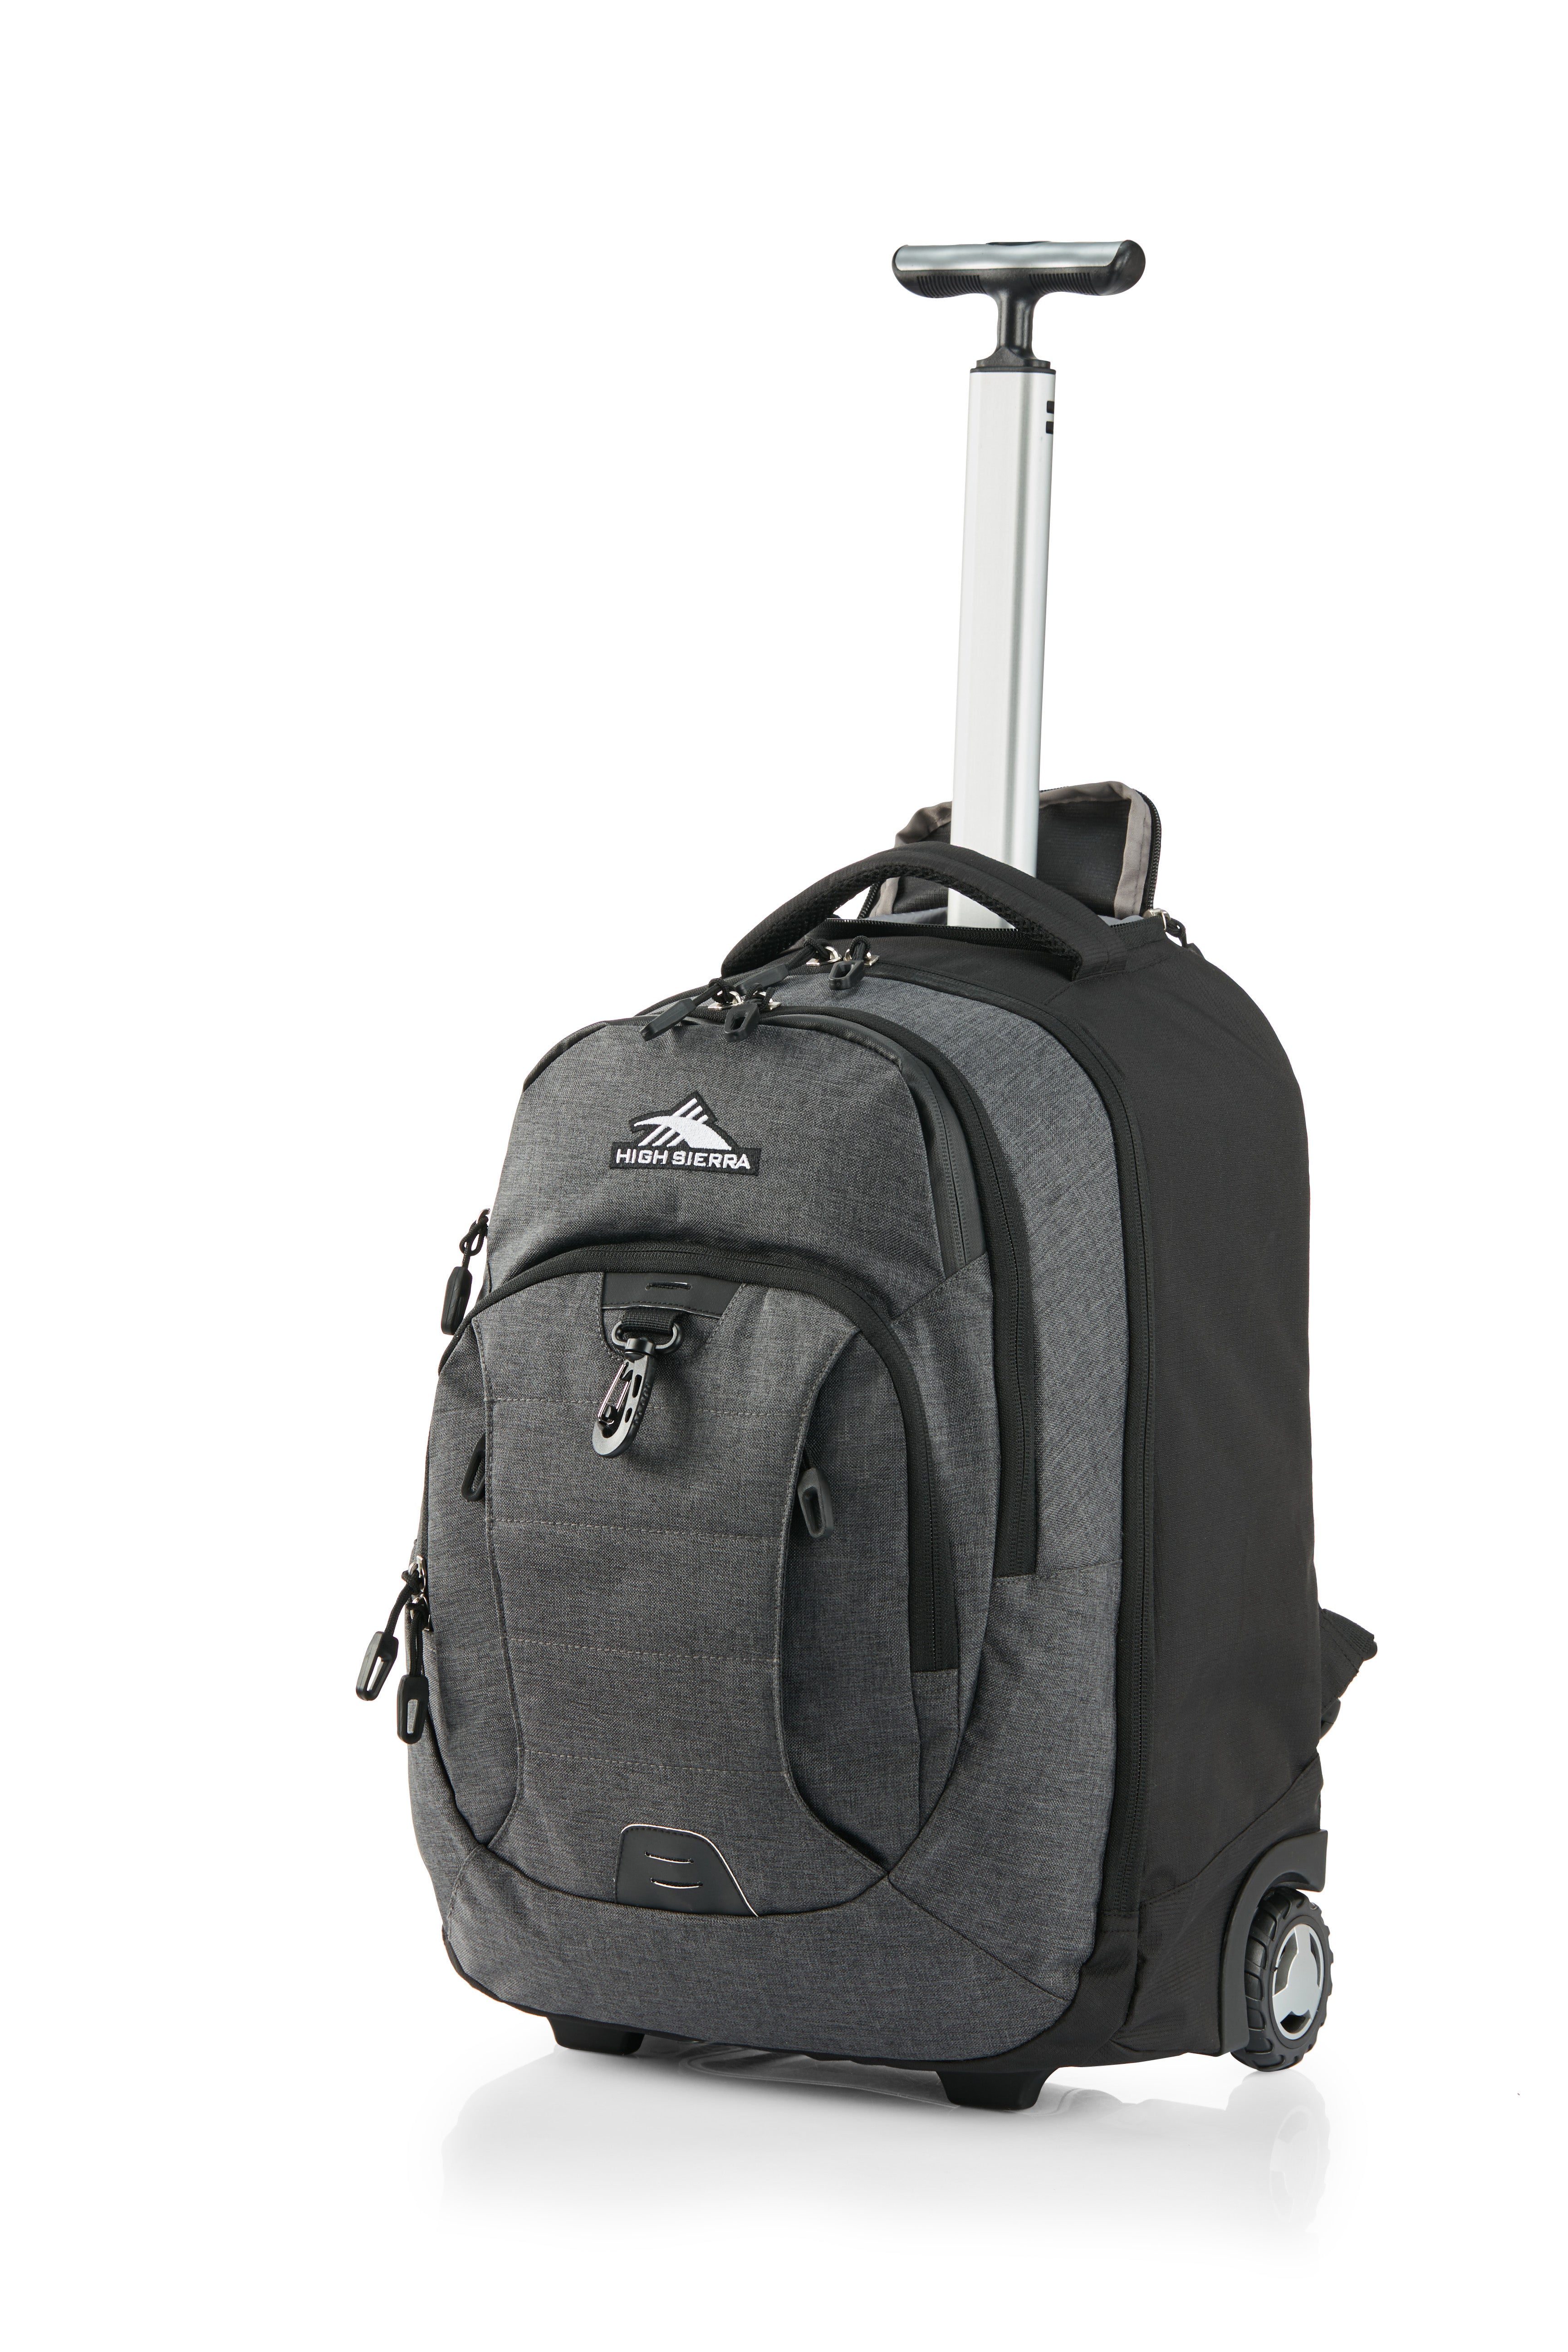 High Sierra - Jarvis Pro backpack on wheels - Black - 0